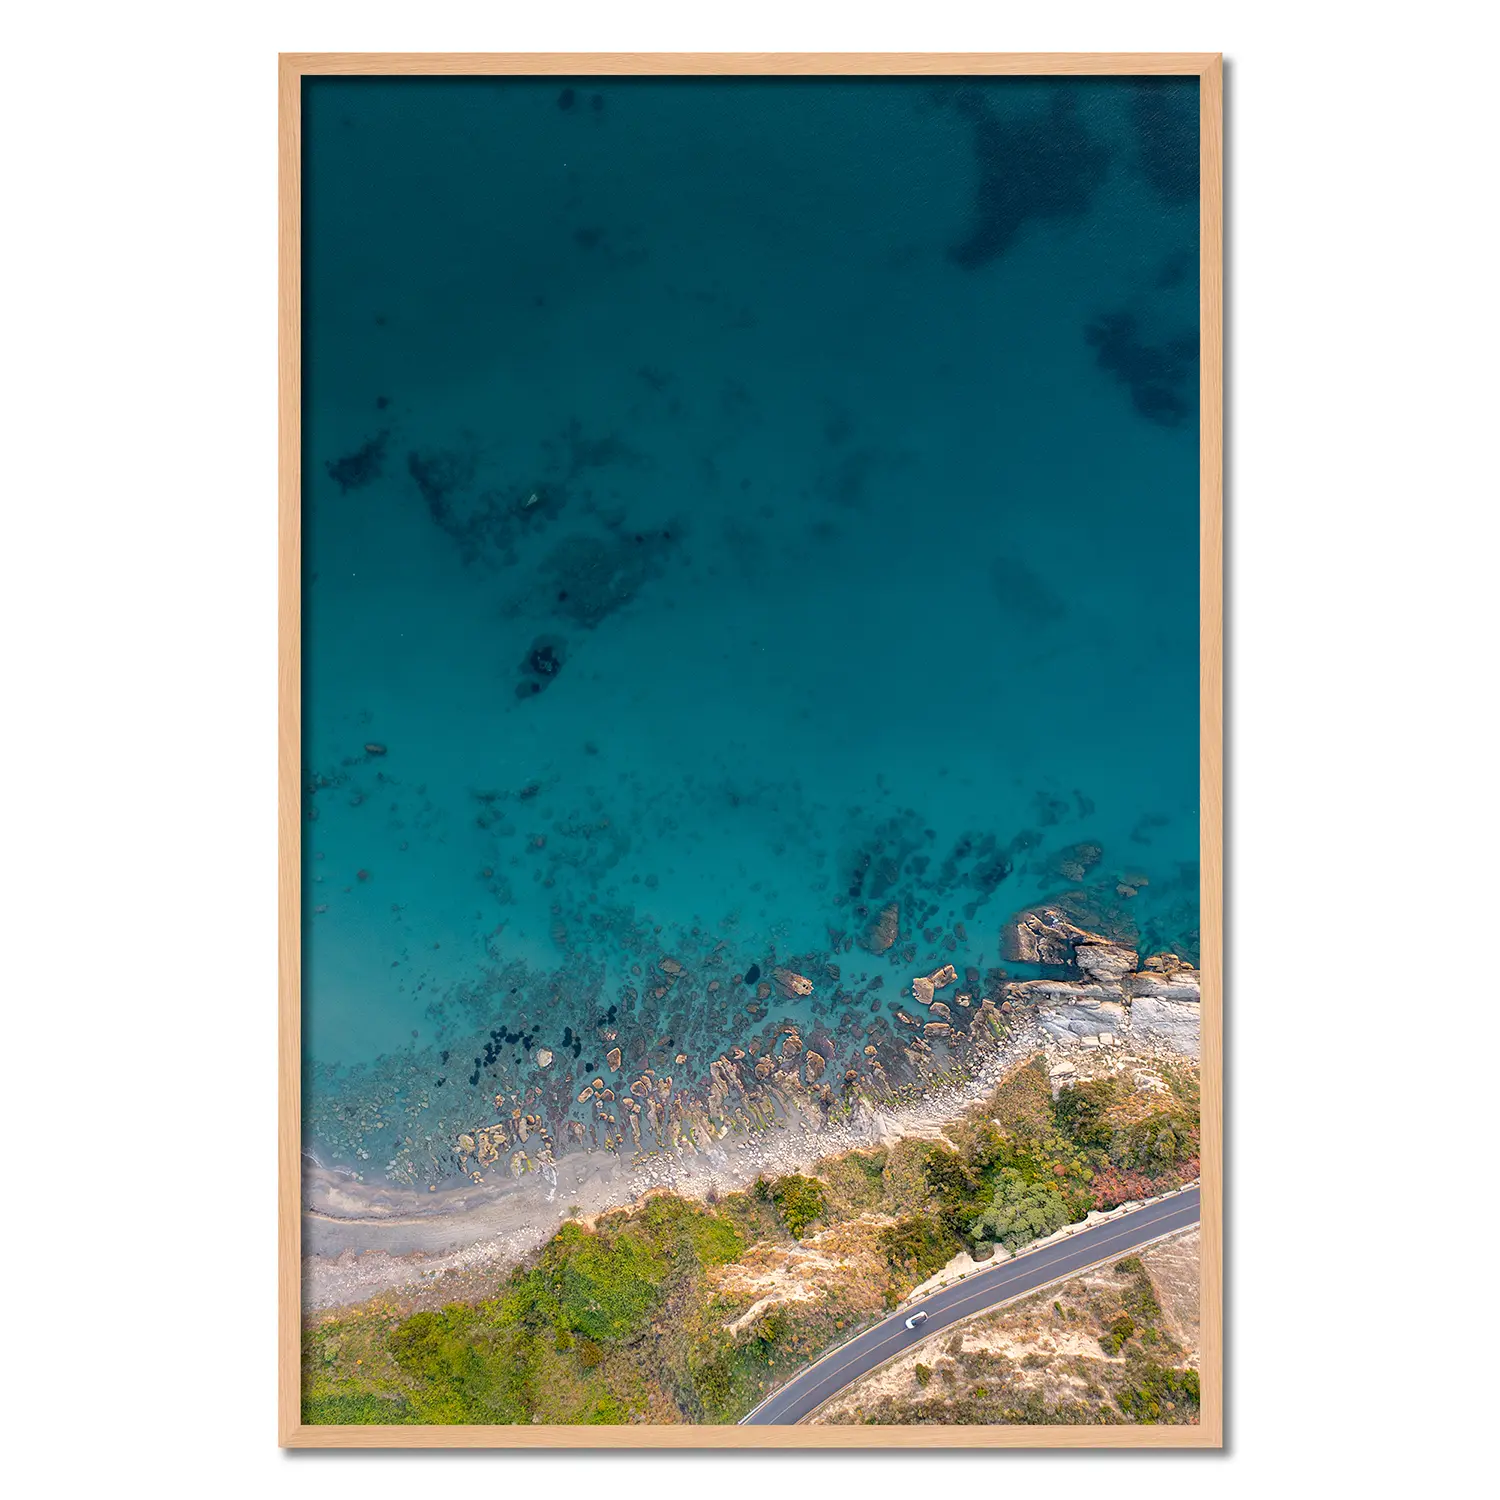 La Baia dello Zefirio è un promontorio sul mare situato nell'estremo sud della Calabria. Conosciuto con il nome di Capo Bruzzano è uno dei luoghi dove i Greci approdarono 2700 anni fa per colonizzare la Calabria. Oggi Capo Bruzzano, è una delle più belle spiagge della Calabria.